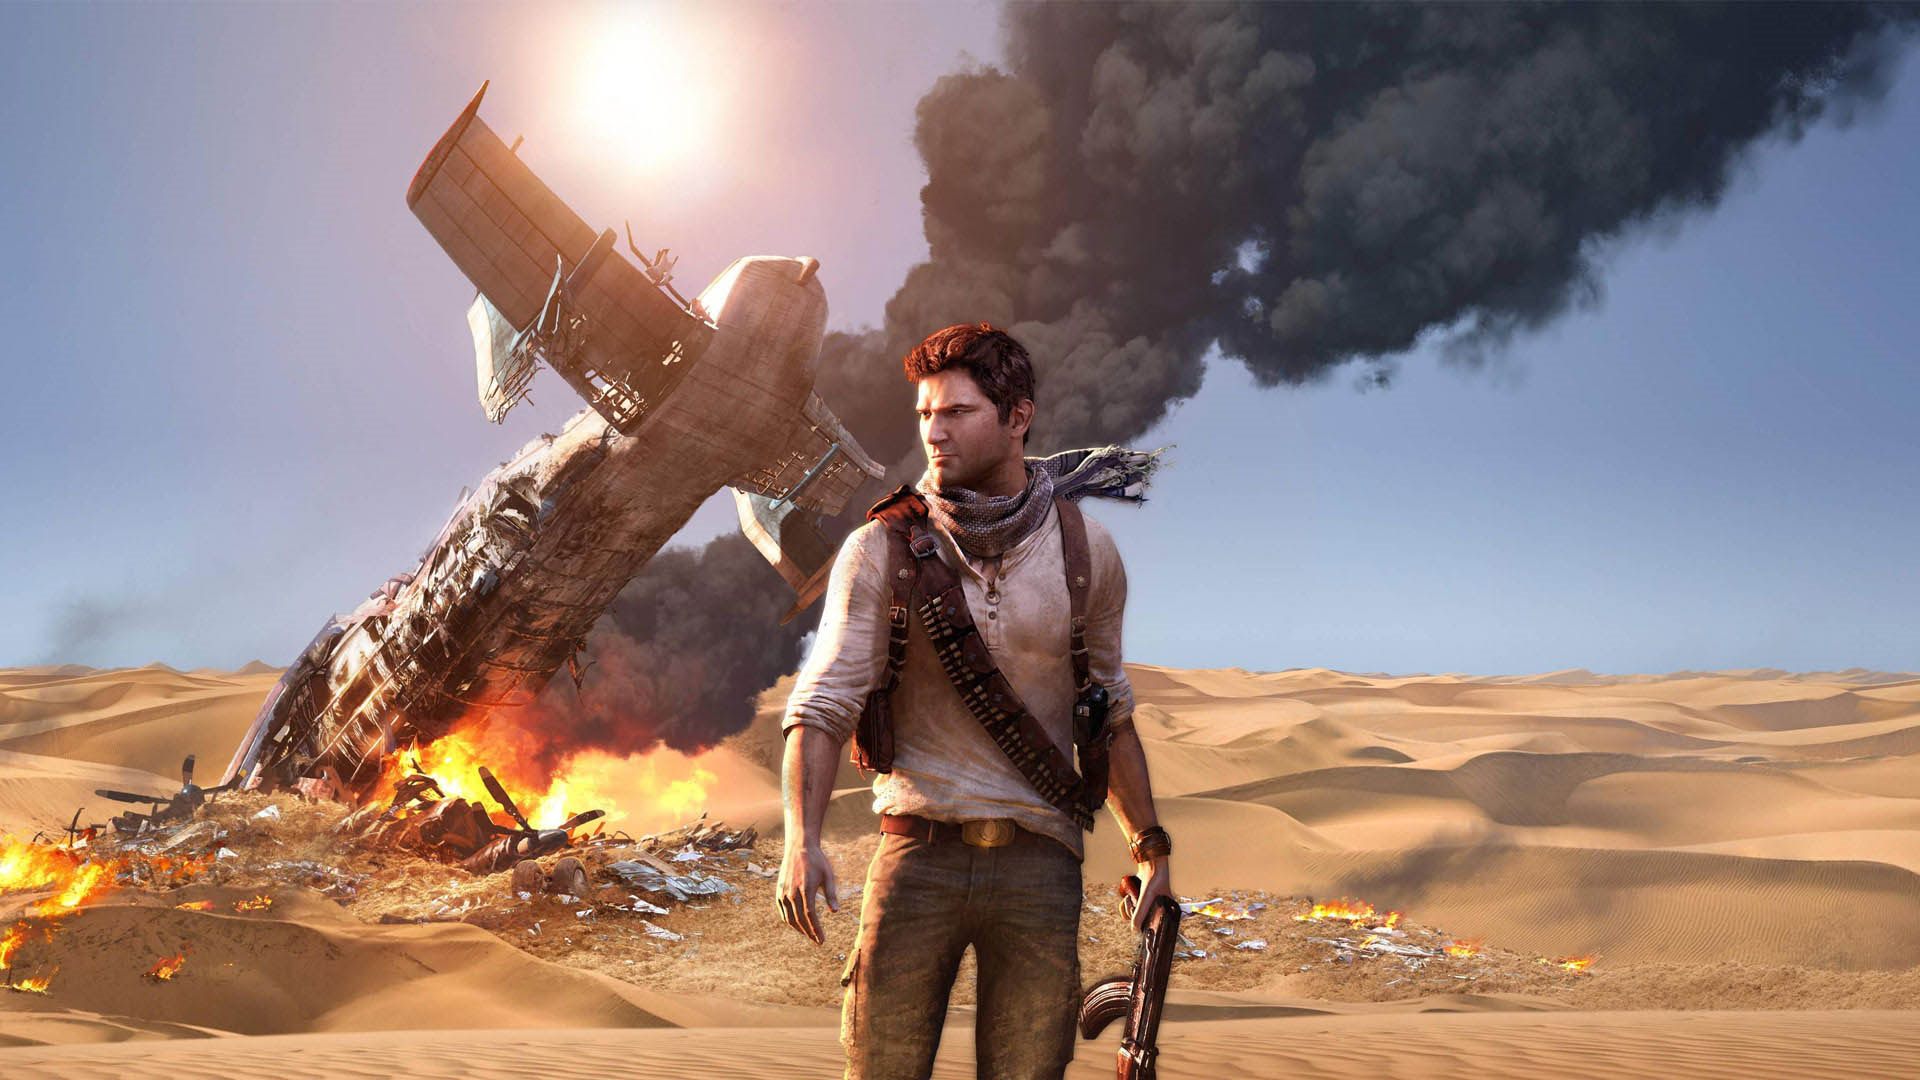 نیتن دریک در کنار هواپیمای آتش گرفته در بیابان در بازی Uncharted 3: Drake's Fortune